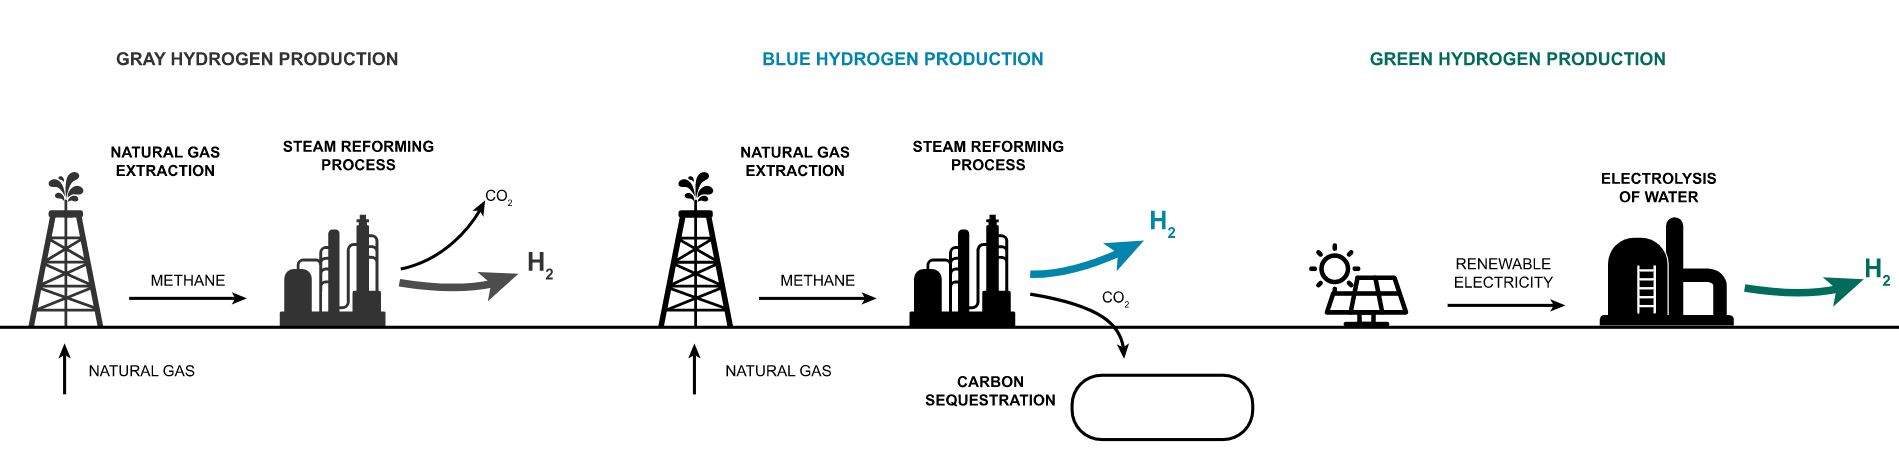 Szara technologia wodoru vs. błękitny wodór vs. zielony wodór